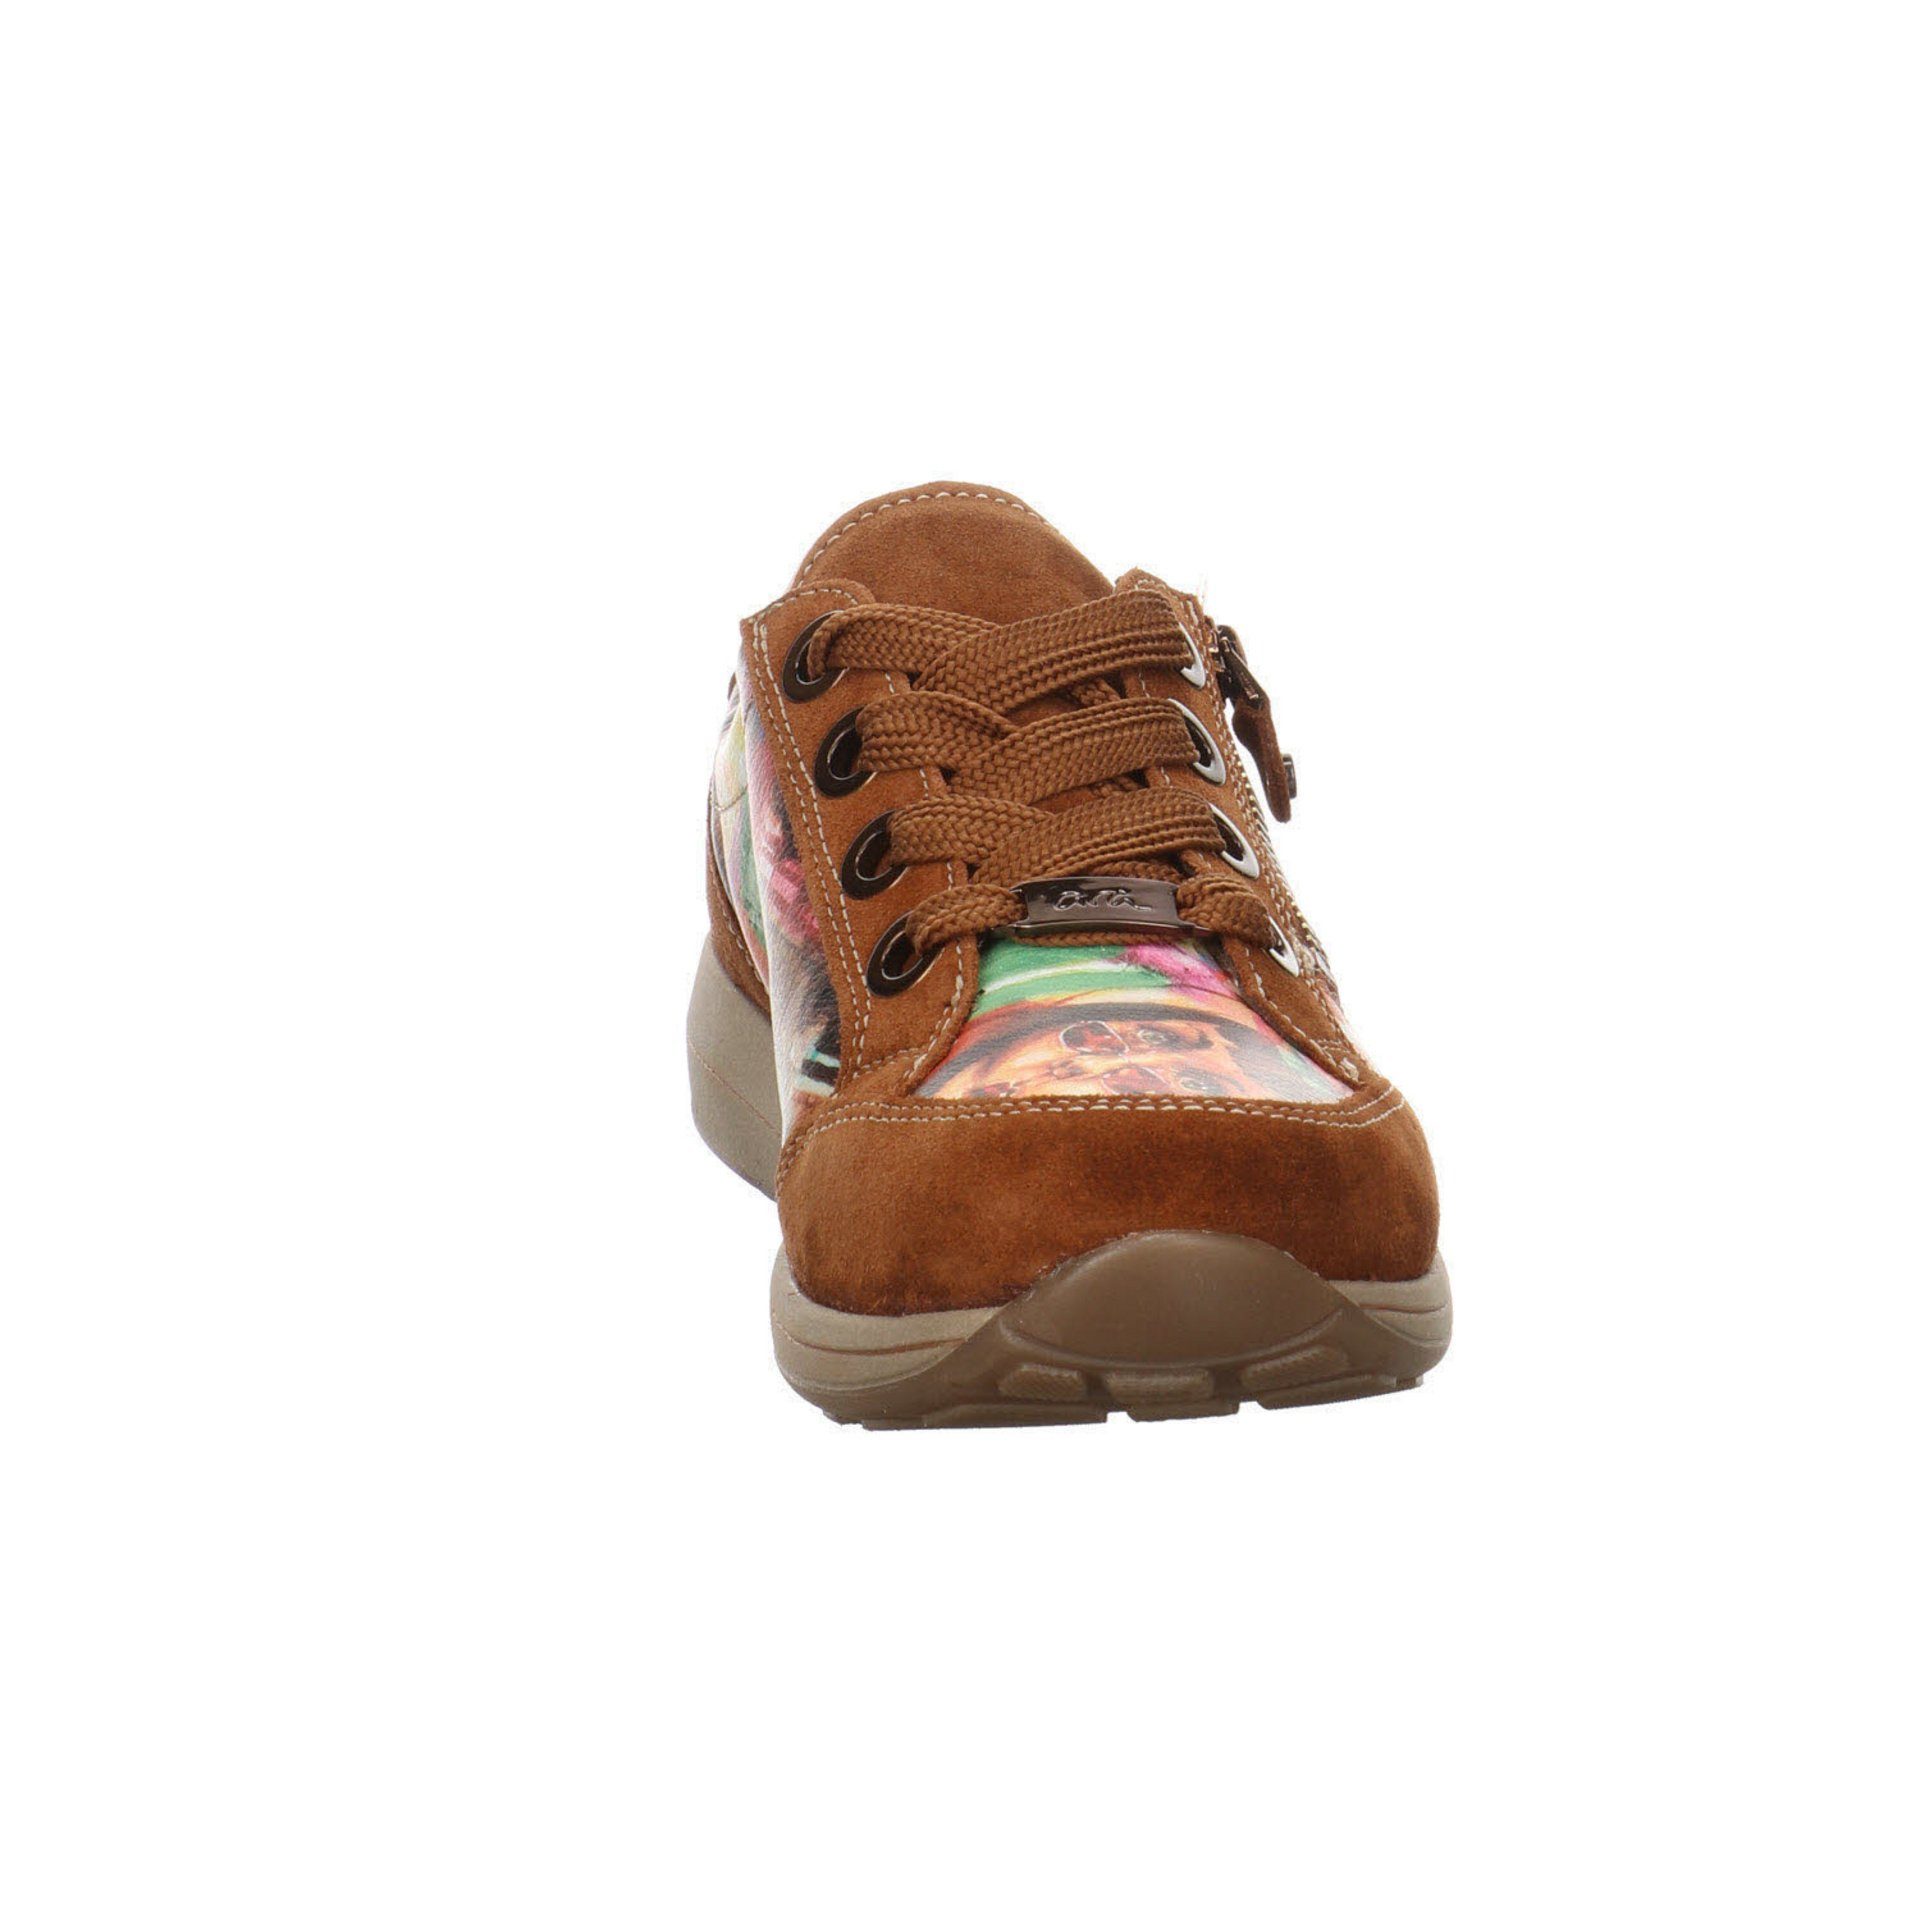 Ara Damen Sneaker Schuhe Osaka-Highsoft Lederkombination Sneaker Schnürschuh braun 043875